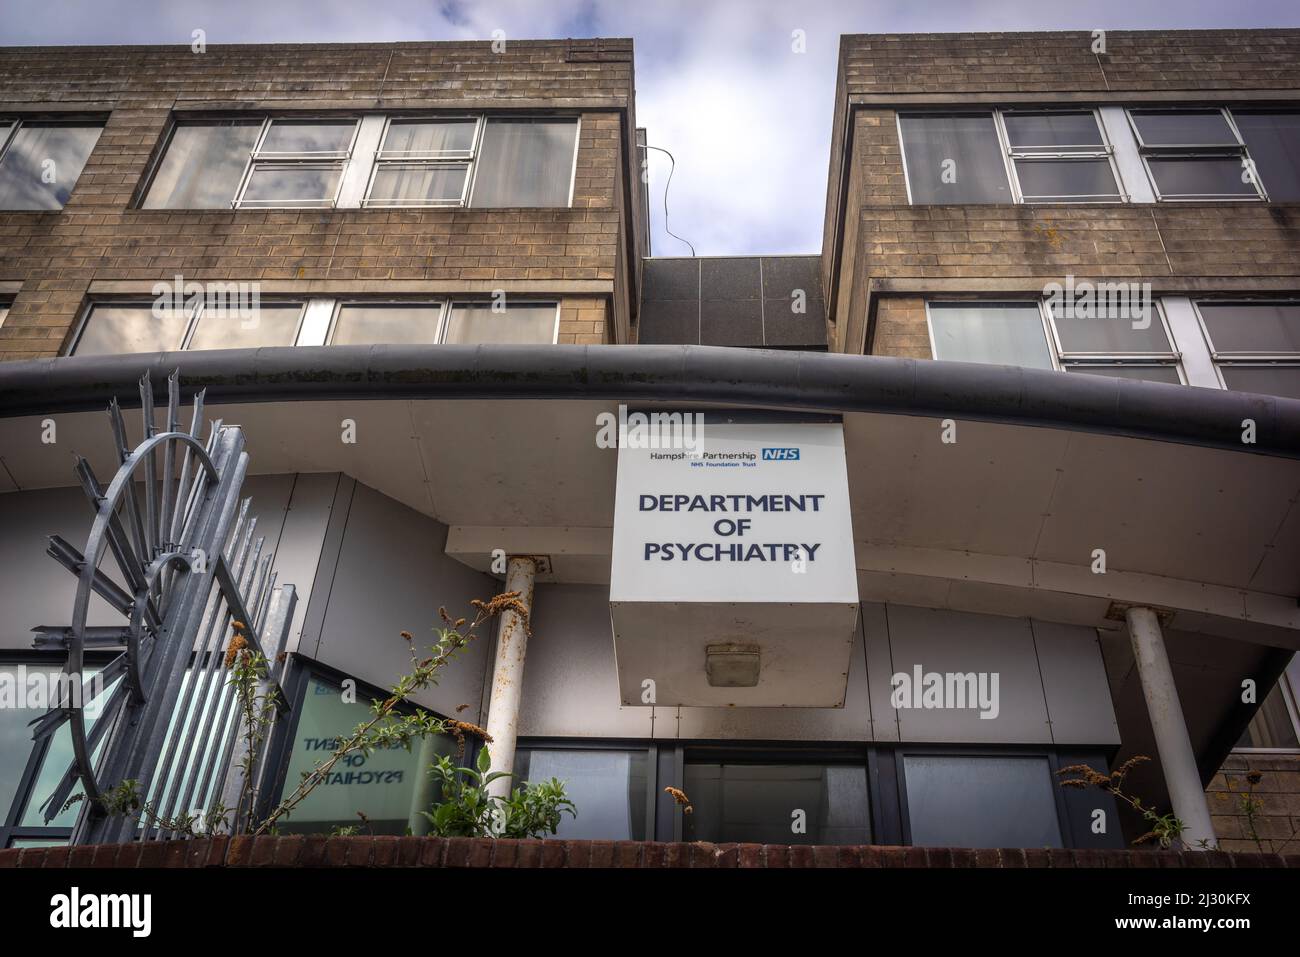 Hampshire Partnership NHS Trust - Département de psychiatrie abandonné à l'hôpital Royal South Hants, Southampton, Angleterre, Royaume-Uni Banque D'Images